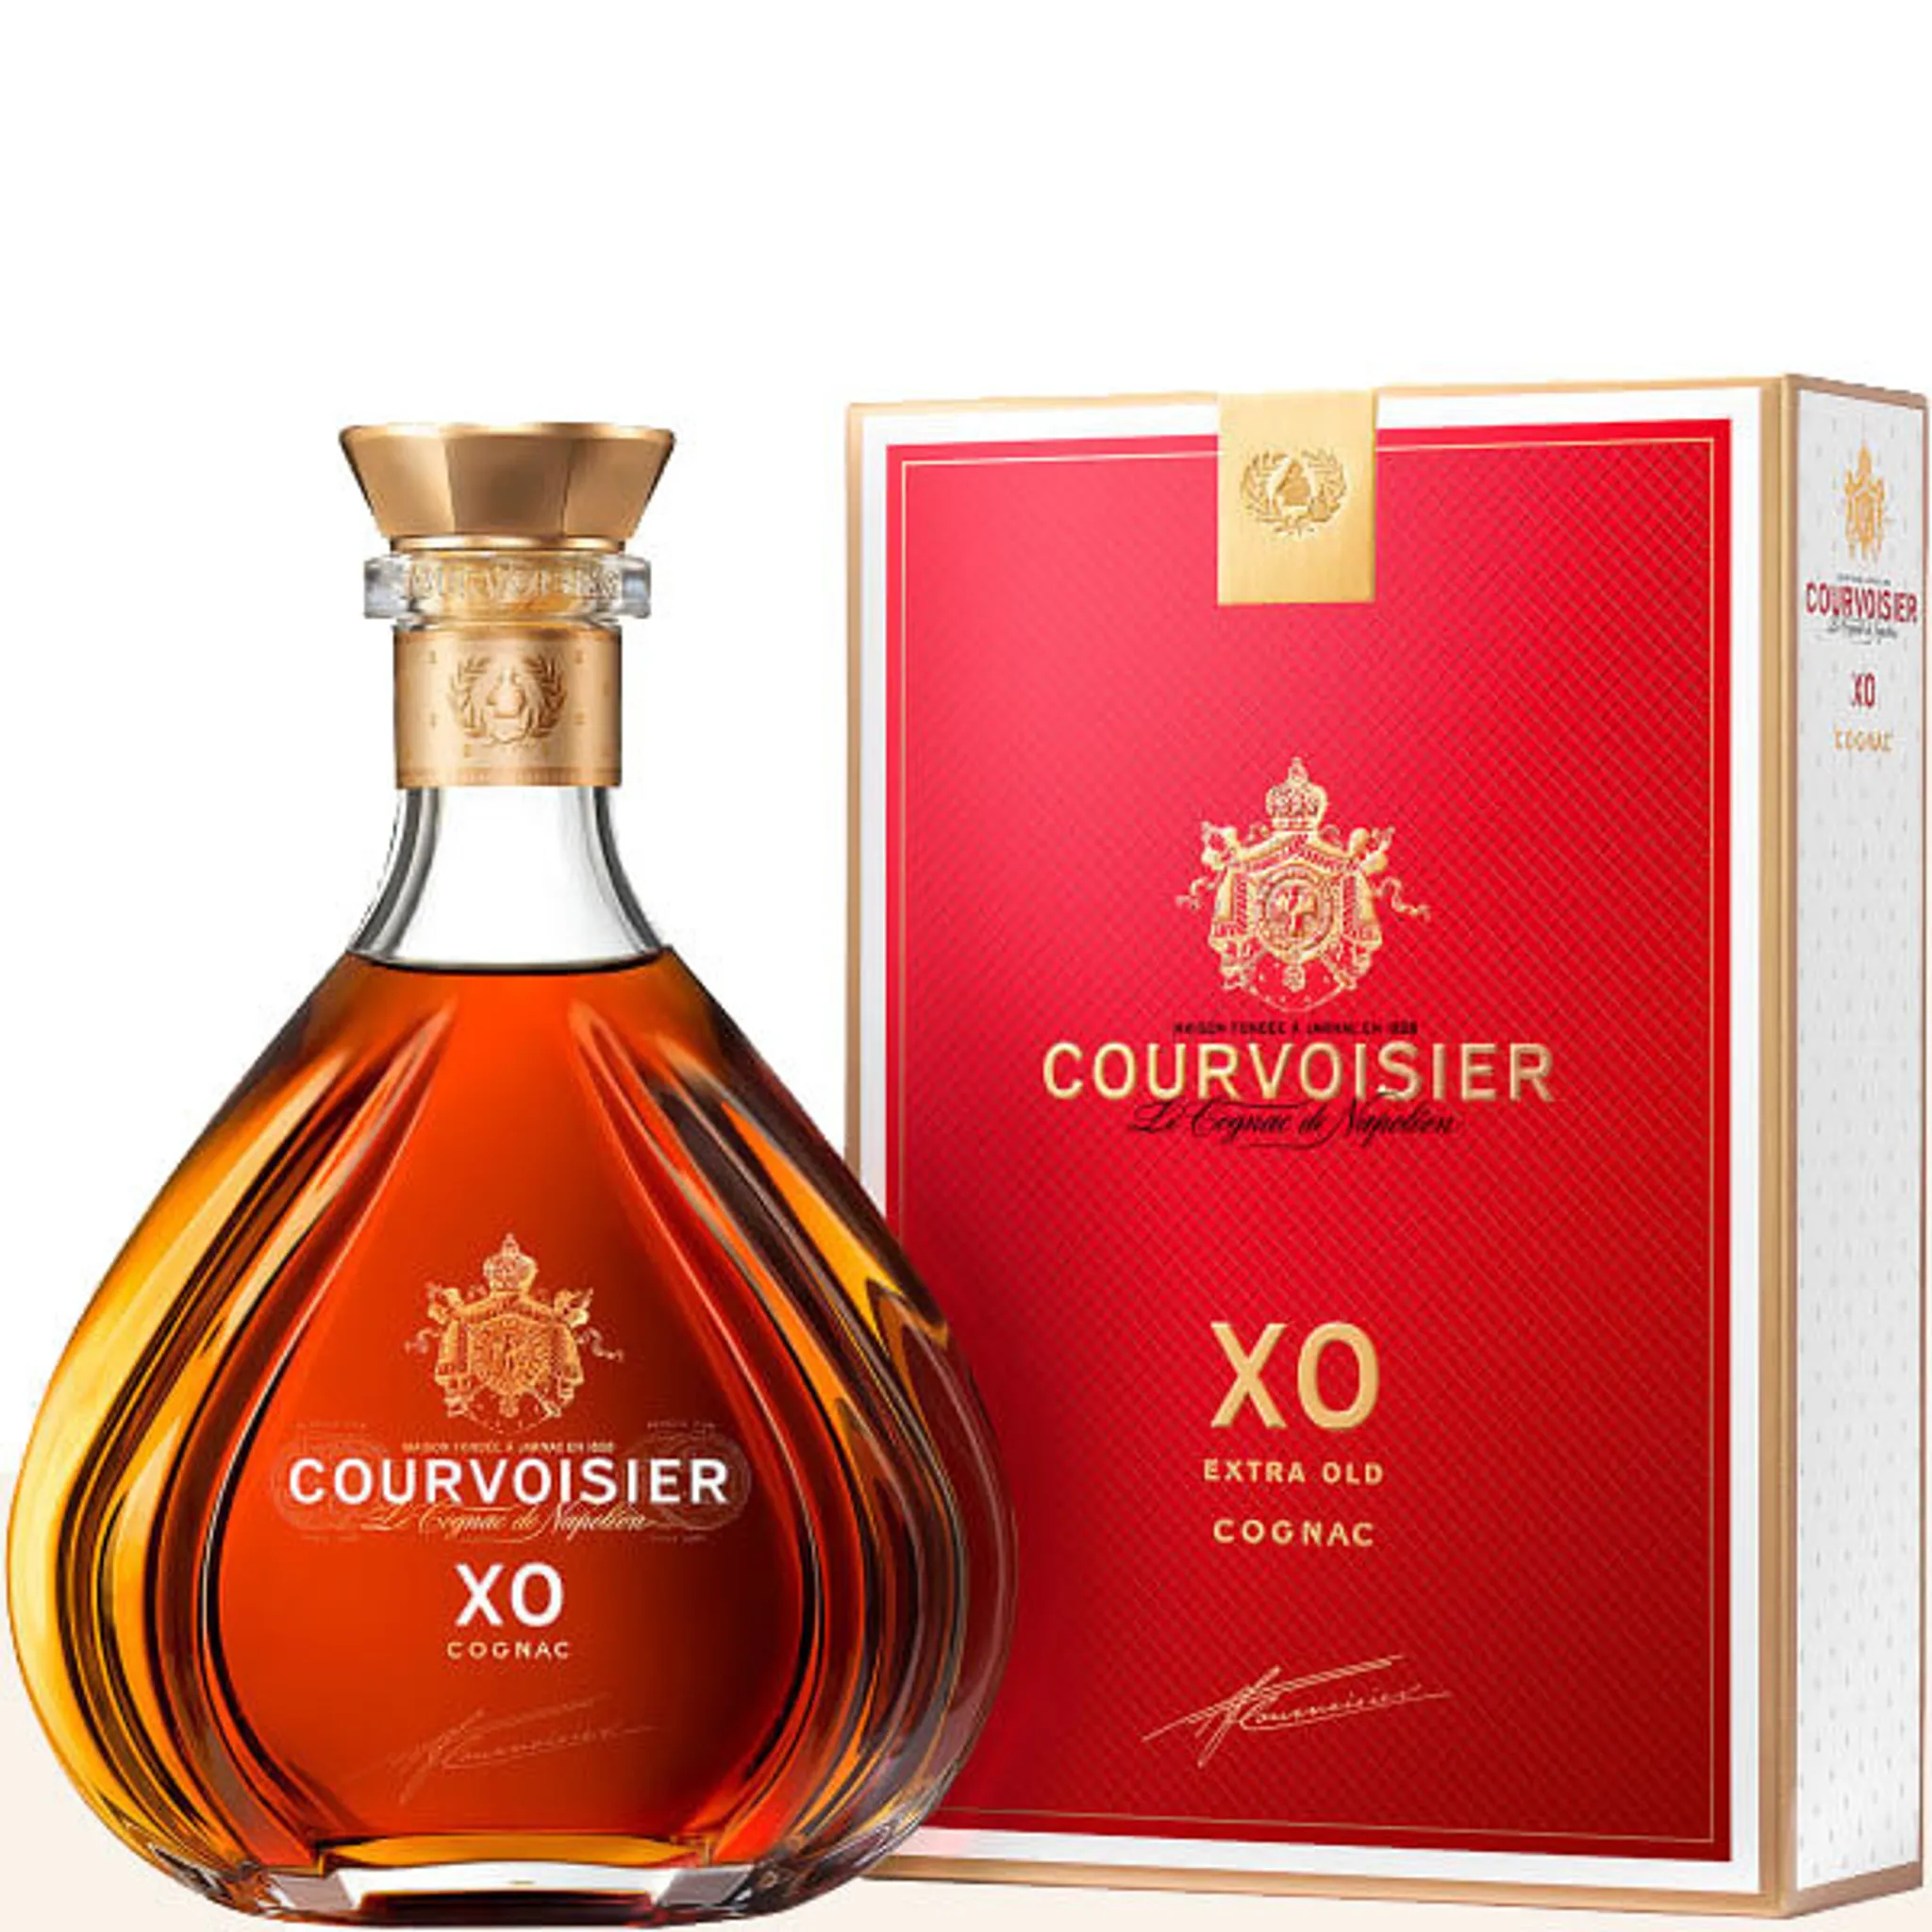 Courvoisier XO Cognac 40% 0,7l Vol. in